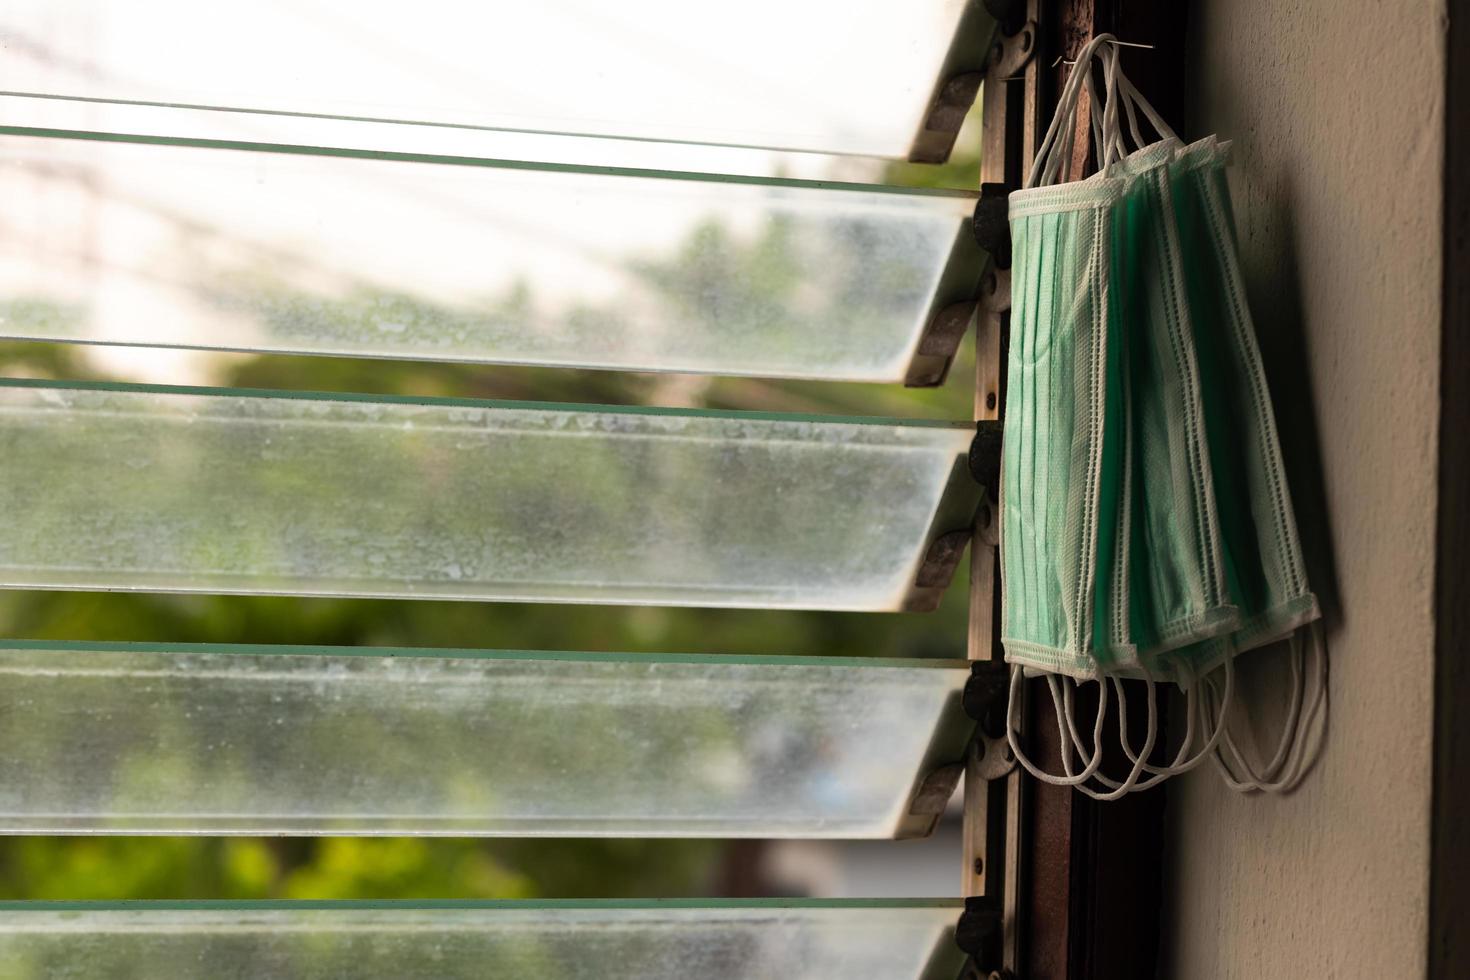 de nombreux masques sanitaires suspendus aux encadrements des fenêtres persiennes. photo